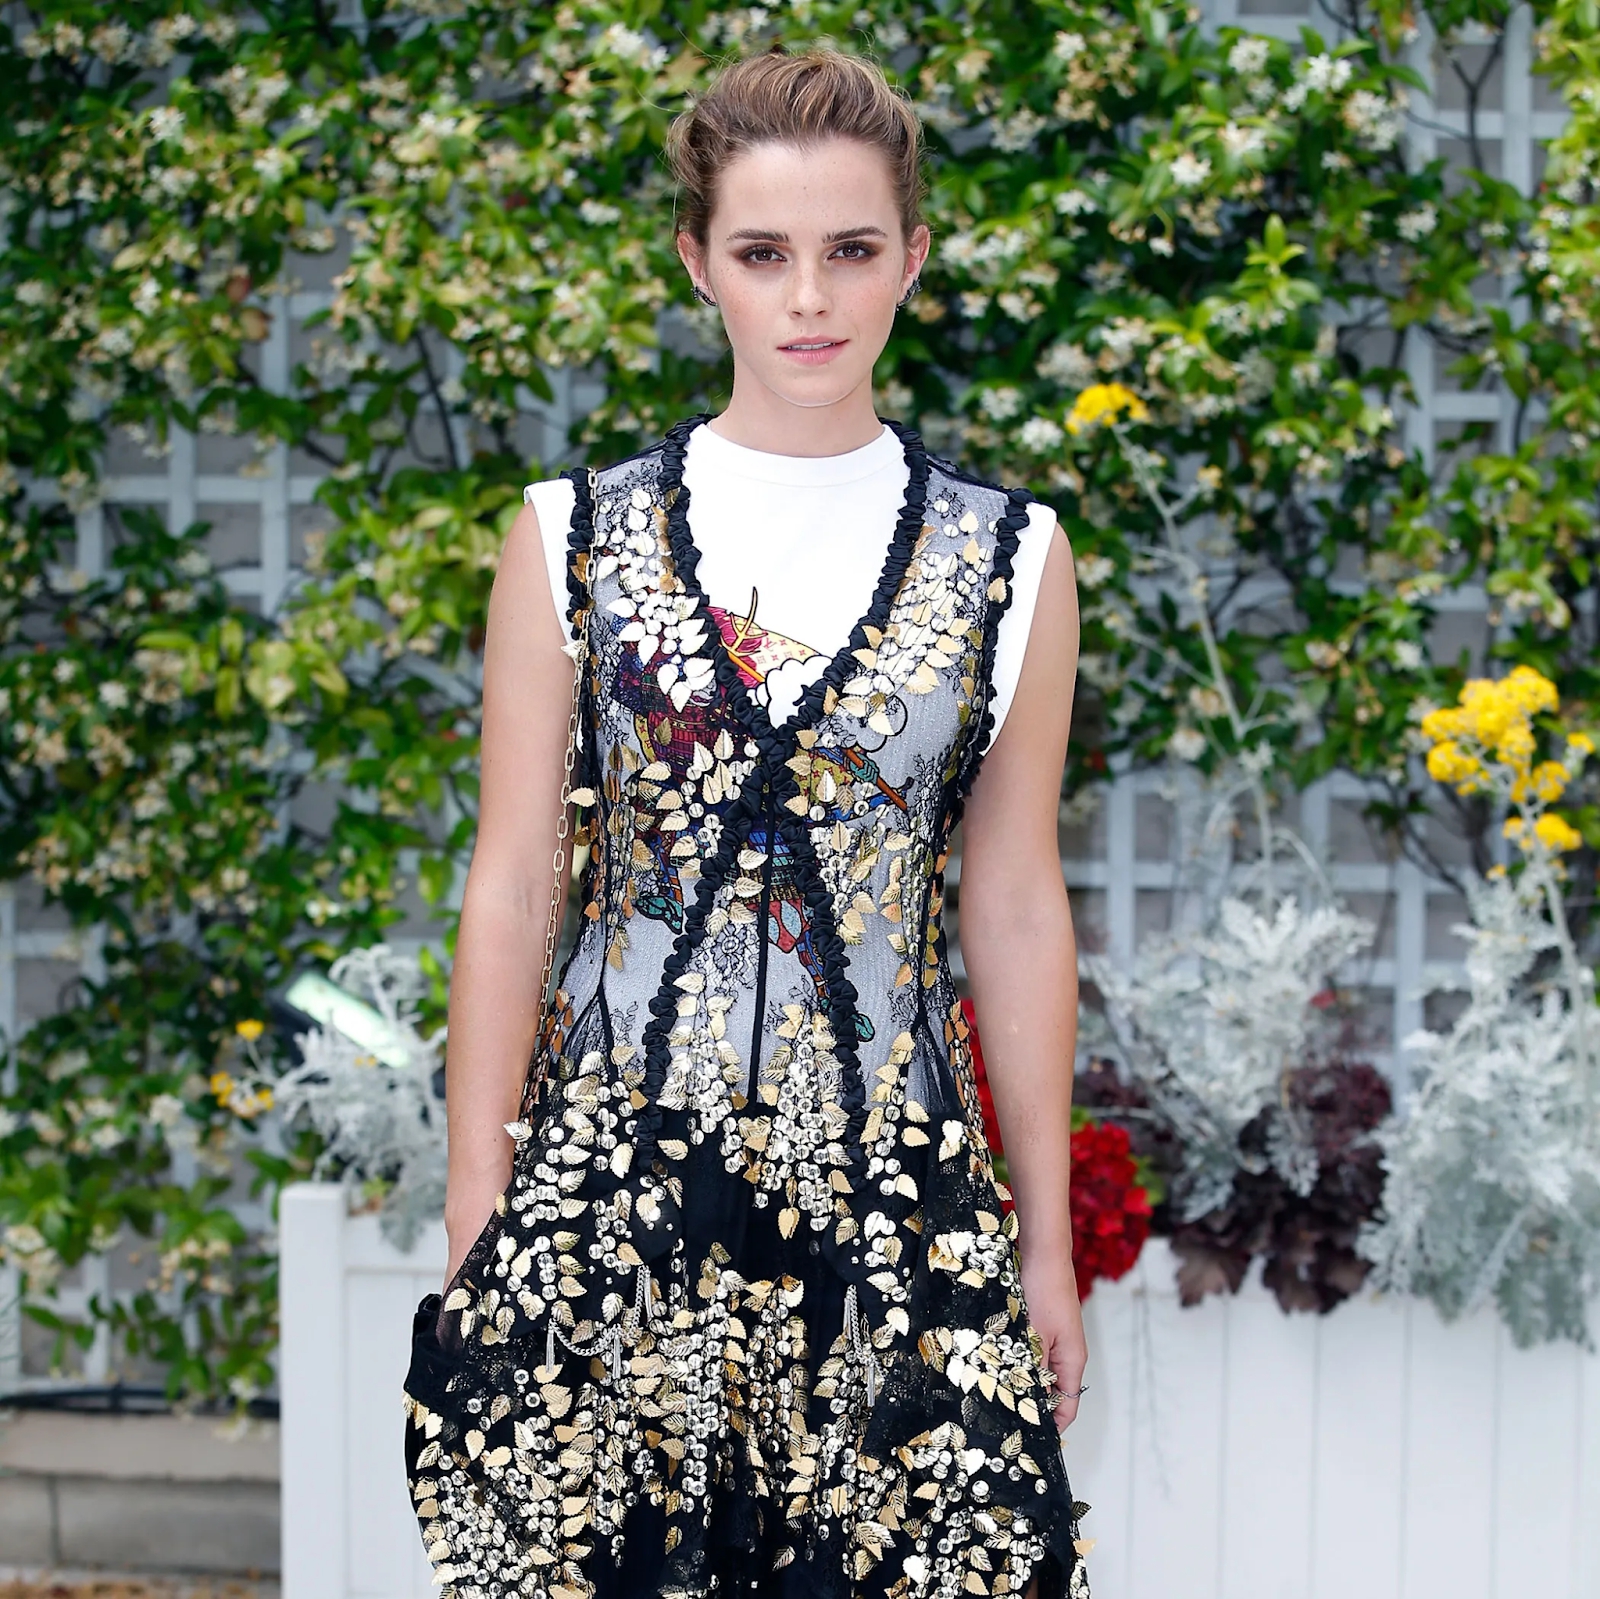 Tuổi 32 của triệu phú Emma Watson: Xinh đẹp thôi chưa đủ, nhìn cách chi tiêu thấy rõ tư duy khác biệt của sếp lớn Gucci - Ảnh 2.